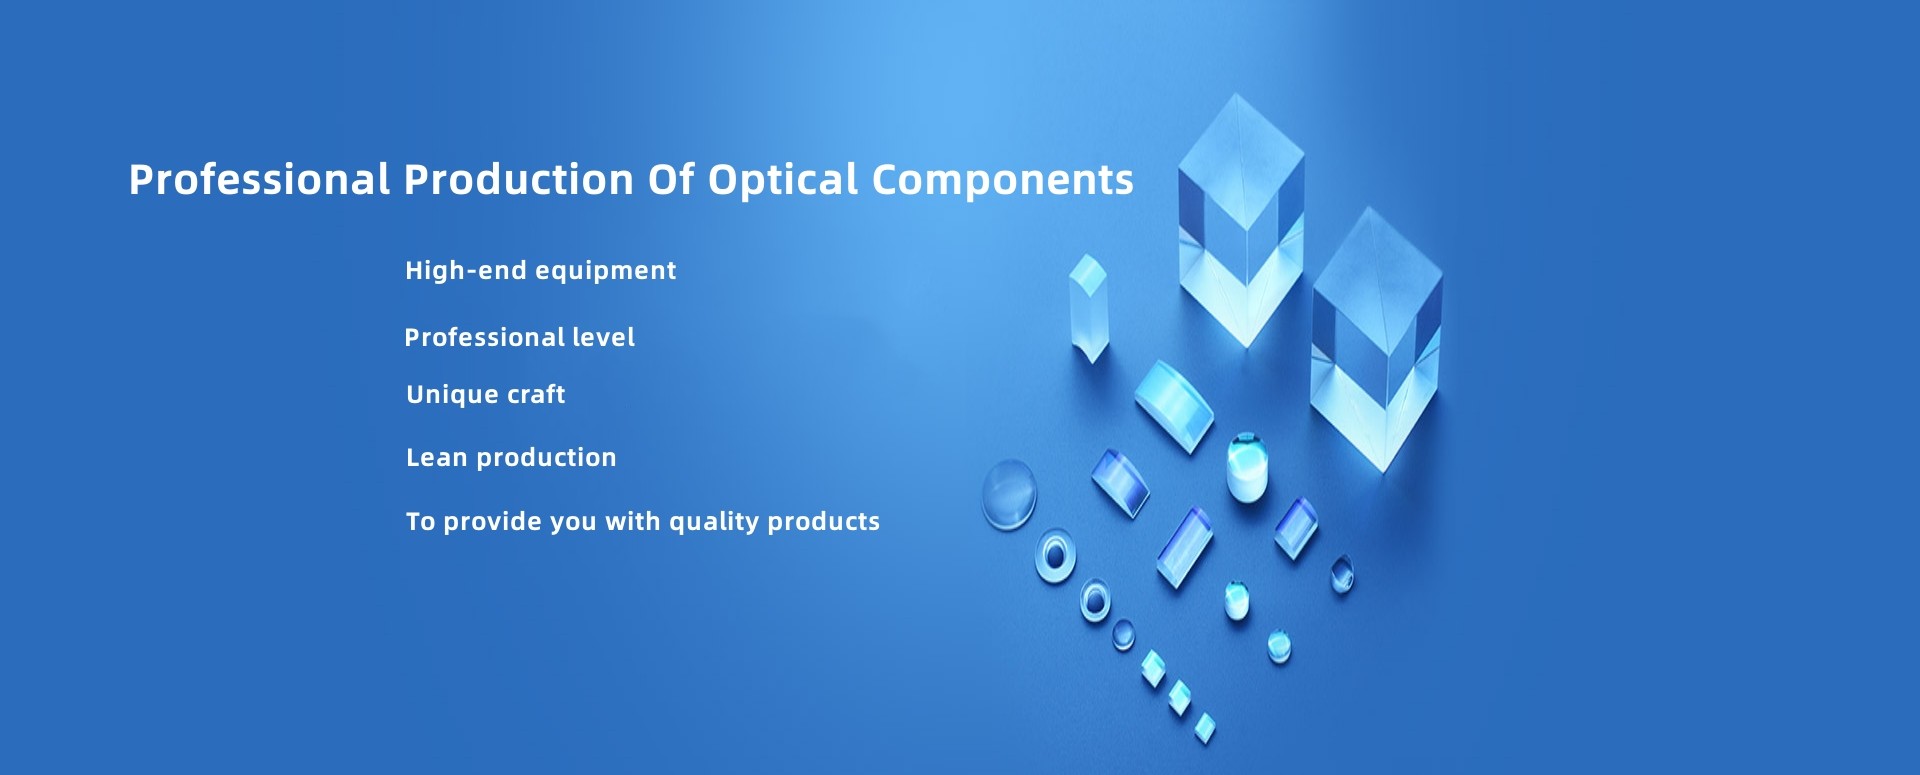 Optik bileşenler fabrikasının profesyonel üretimi